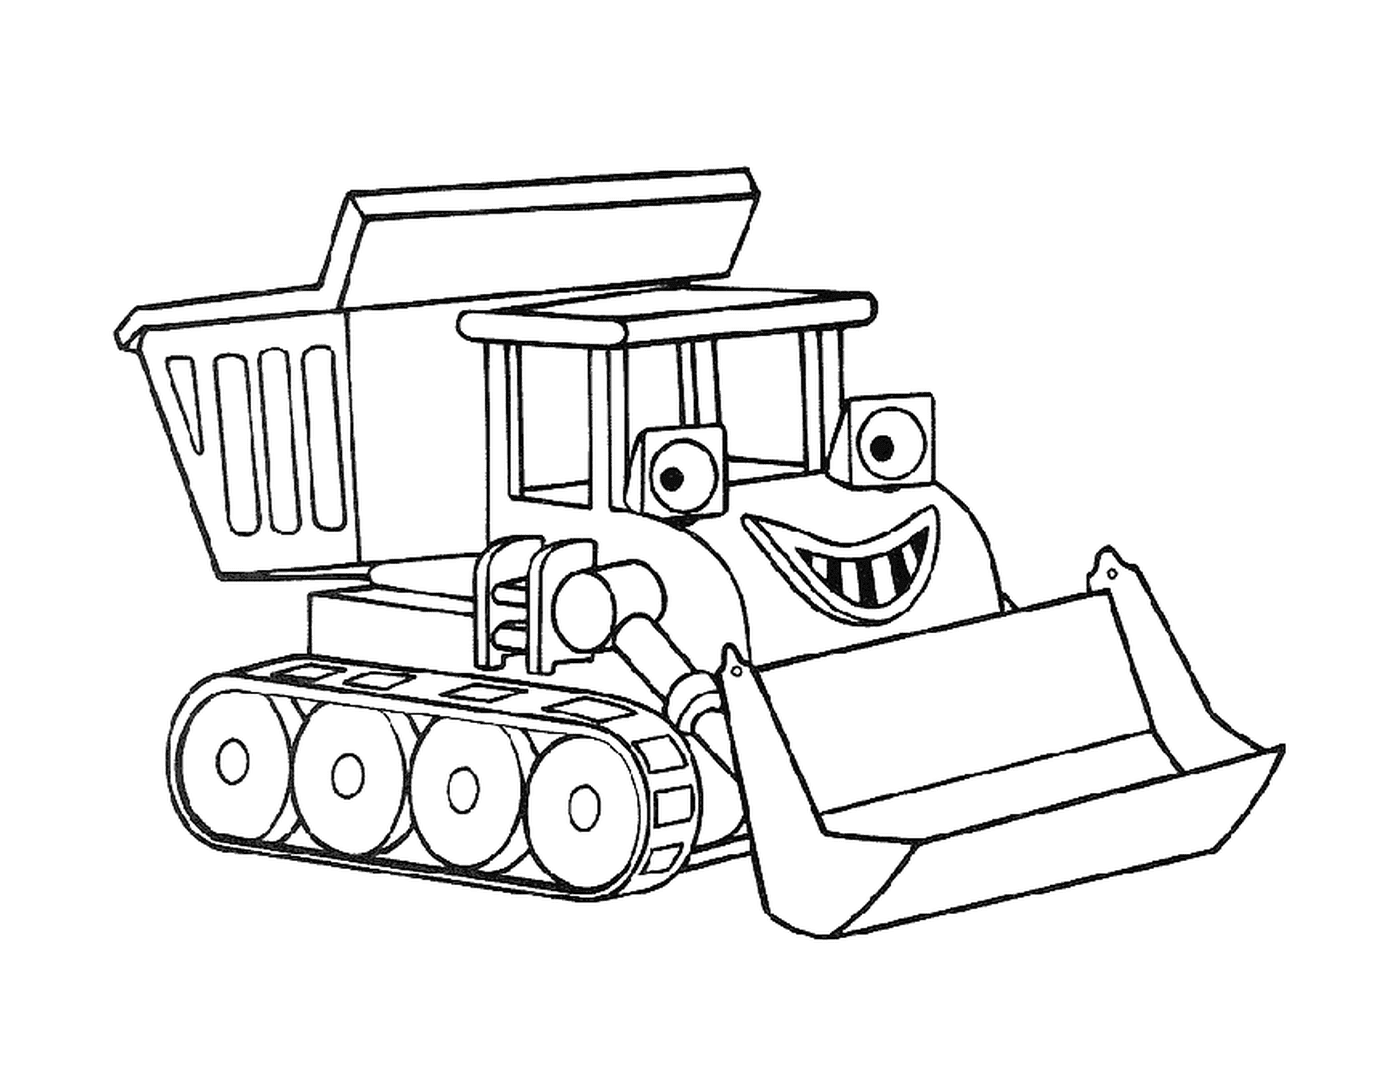  A cartoon bulldozer 